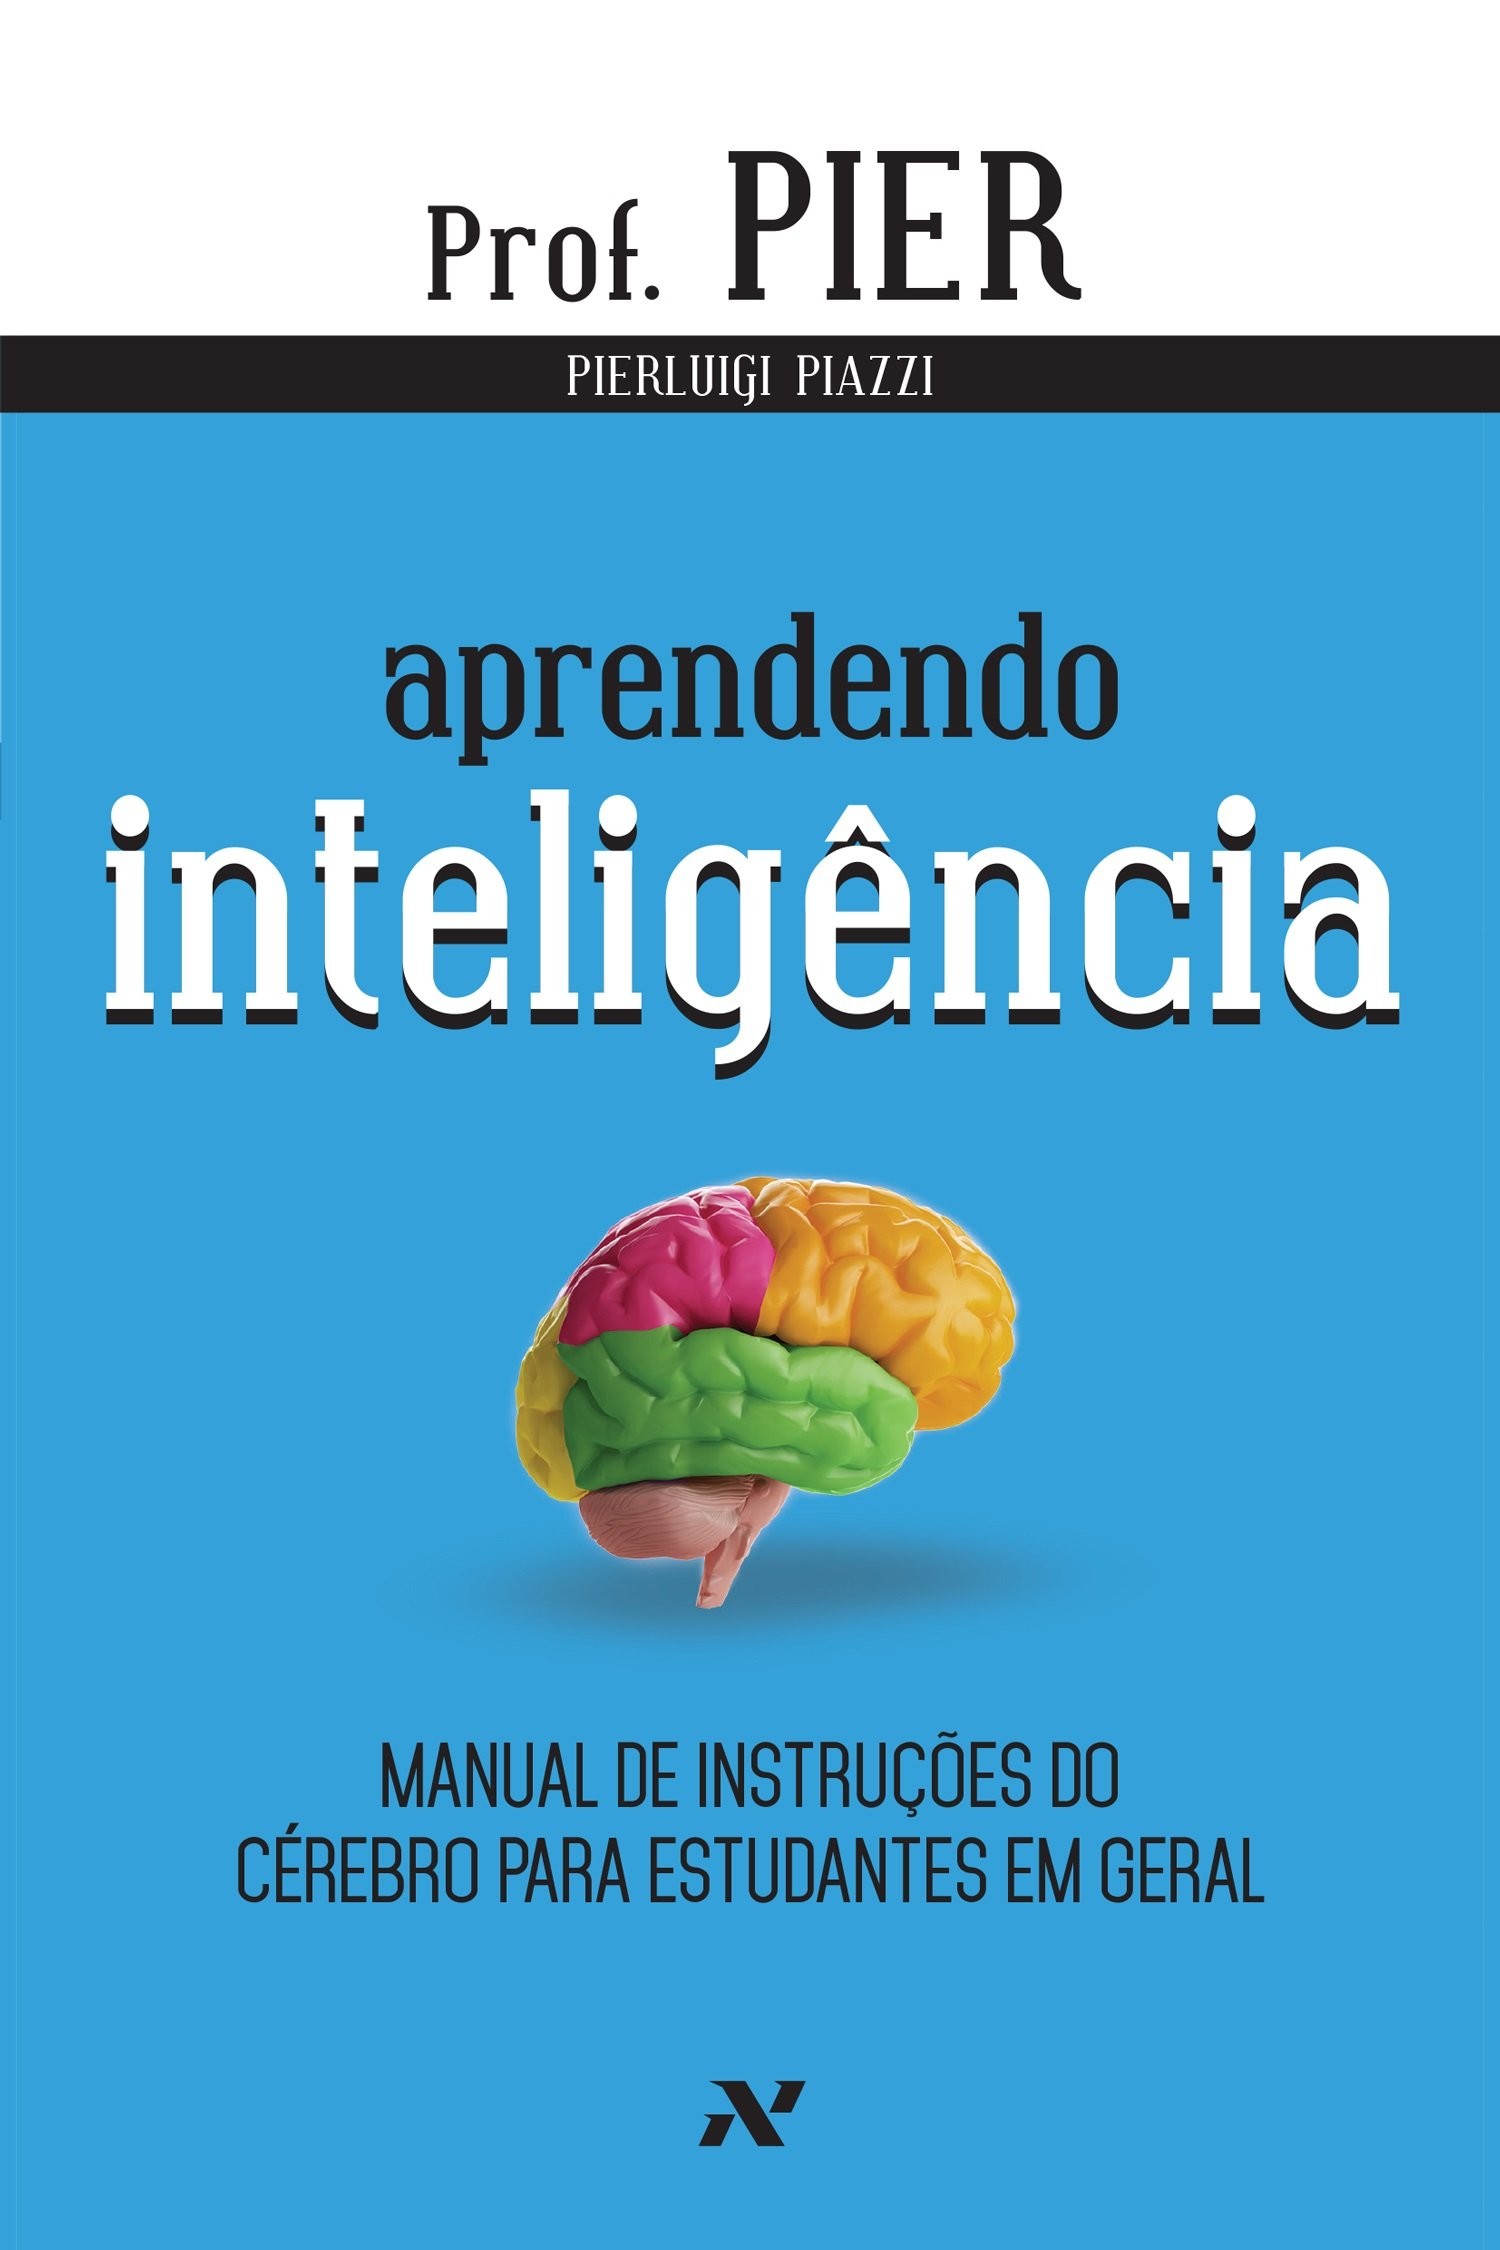 Aprendendo Inteligência - Manual de Instruções do Cérebro para Estudantes em Geral - Vol.1